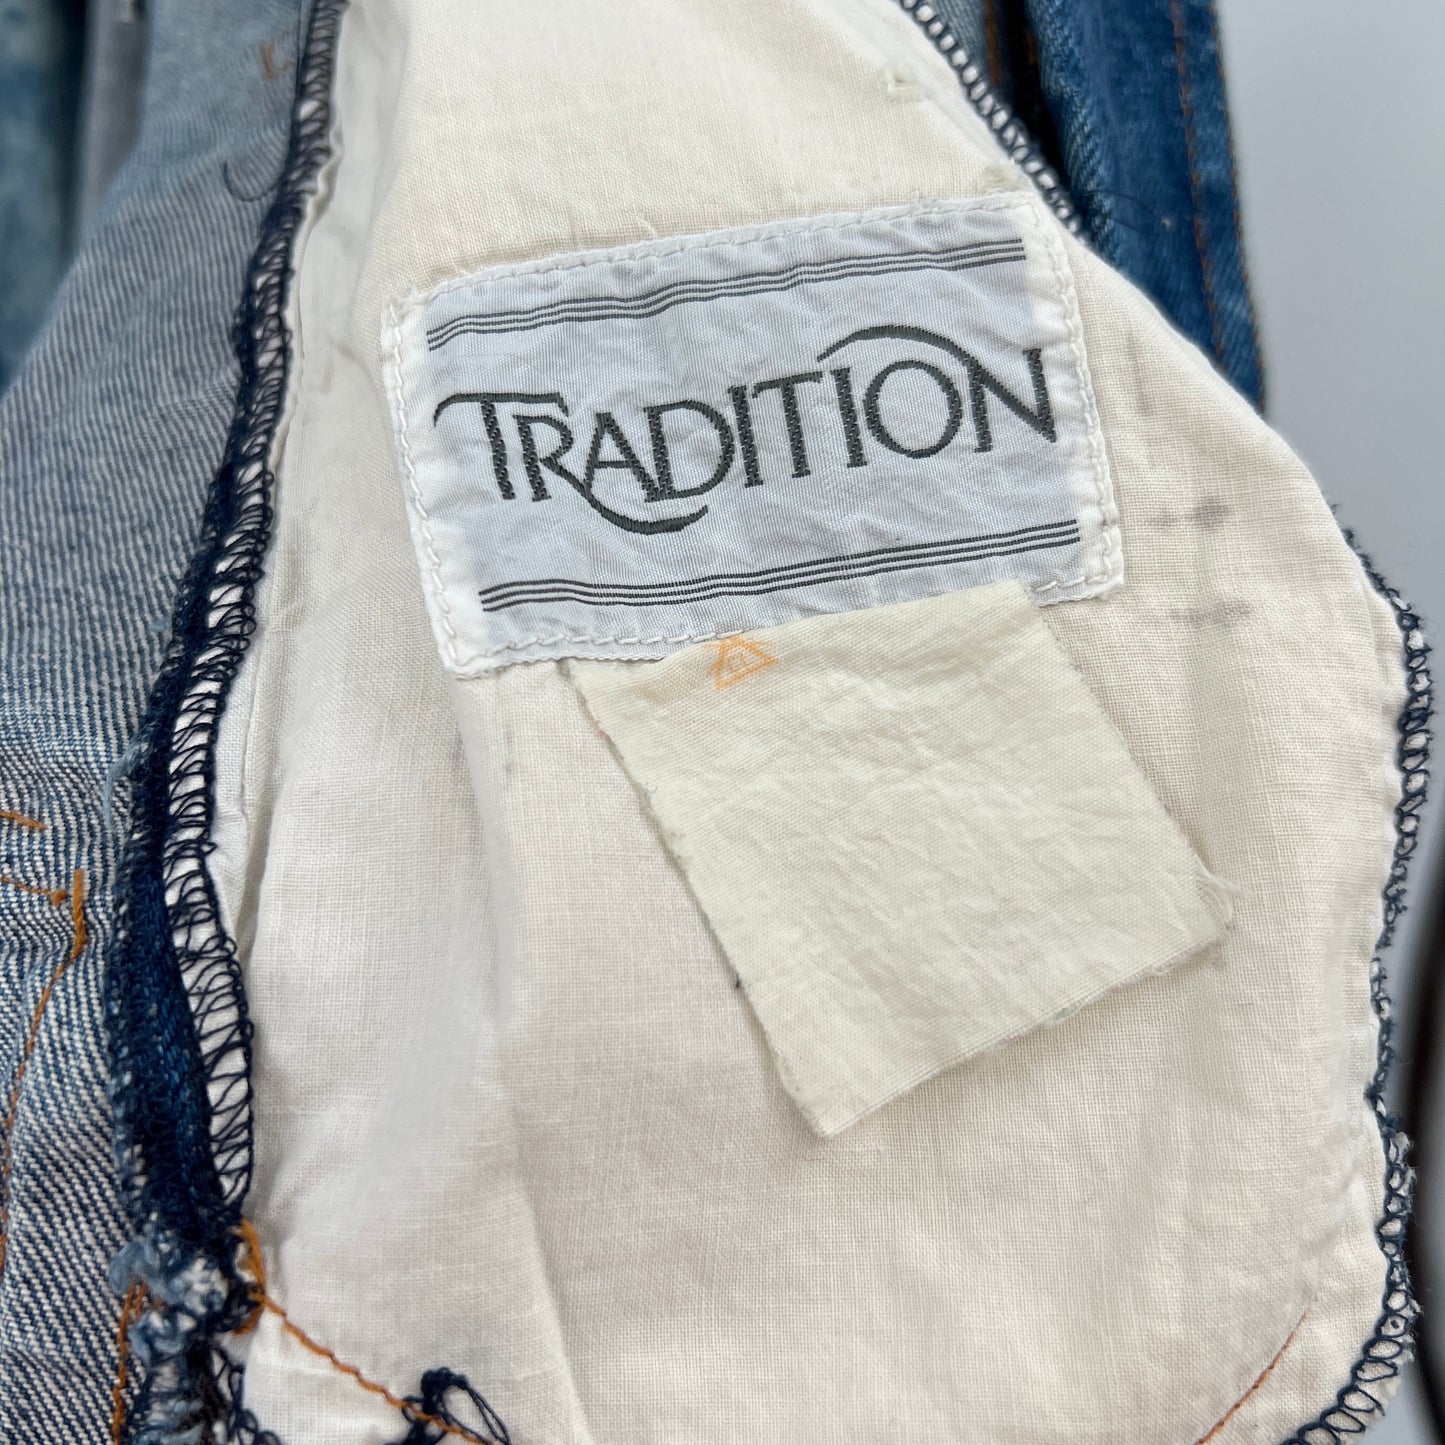 sold.Vintage Traditions Acid Wash Denim Jacket M